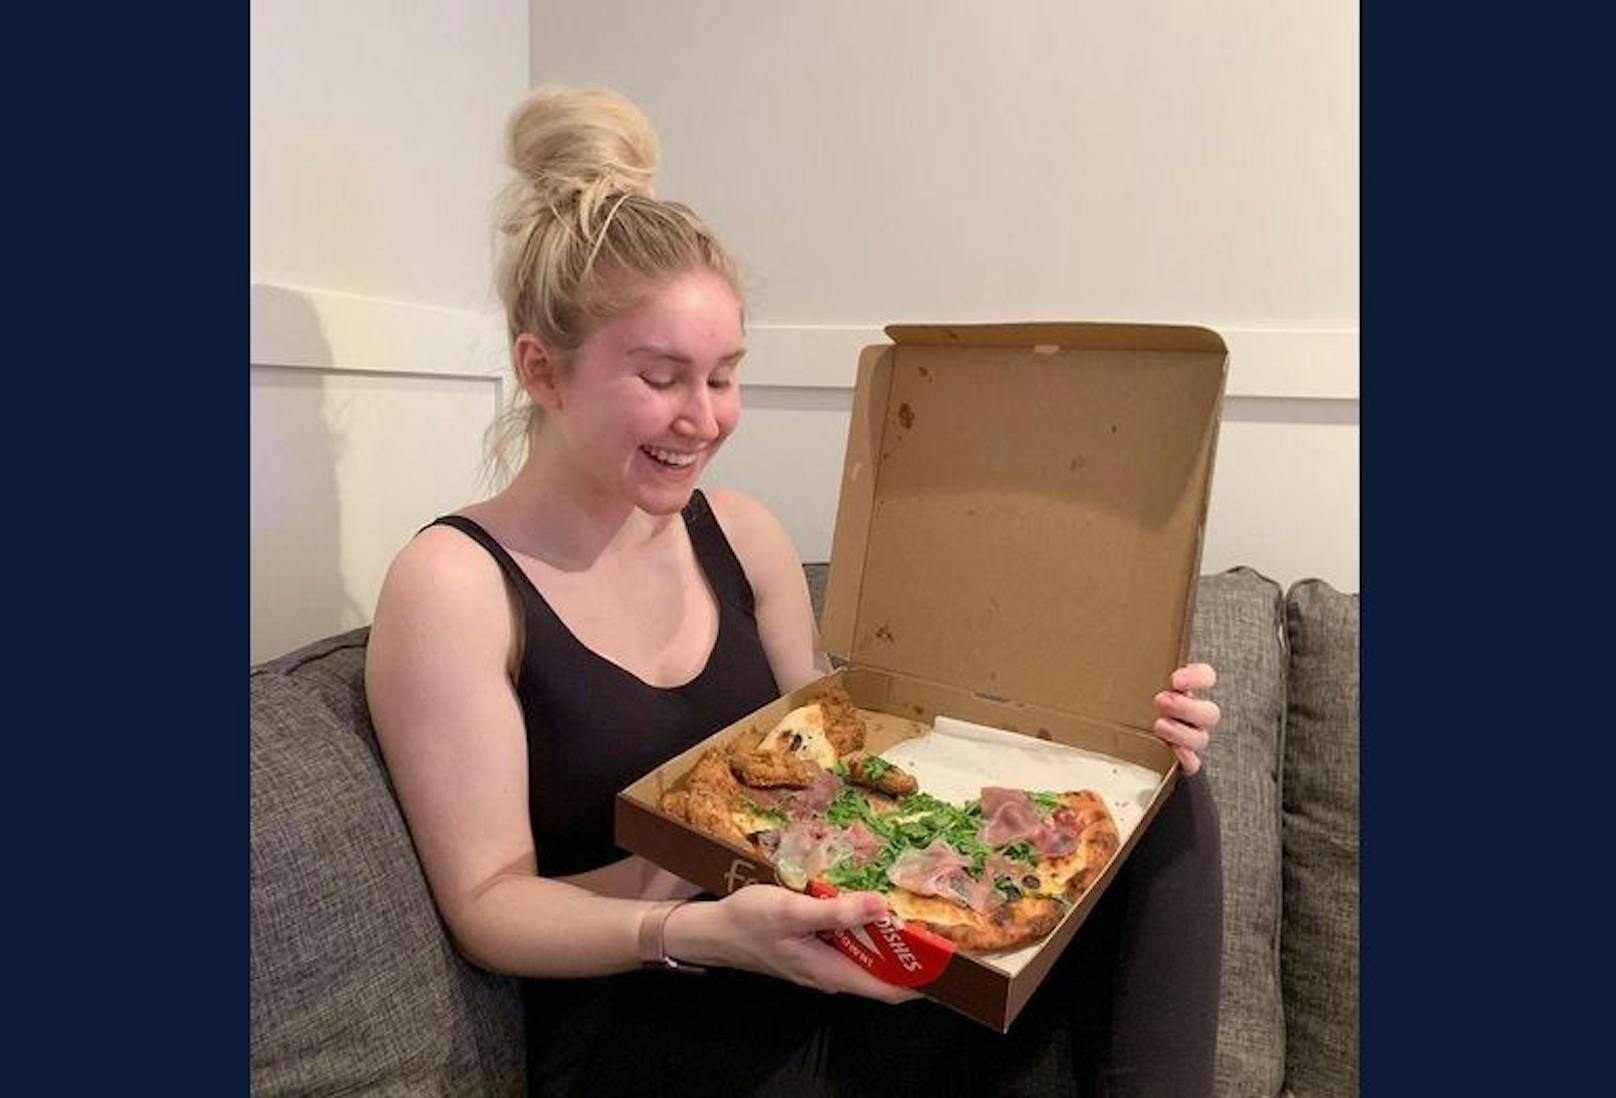 Ein solches Bild konnte man sich vor kurzer Zeit noch nicht auf dem Instagram-Profil von Sophie vorstellen. Nun posiert sie aber glücklich mit ihrer Pizza.